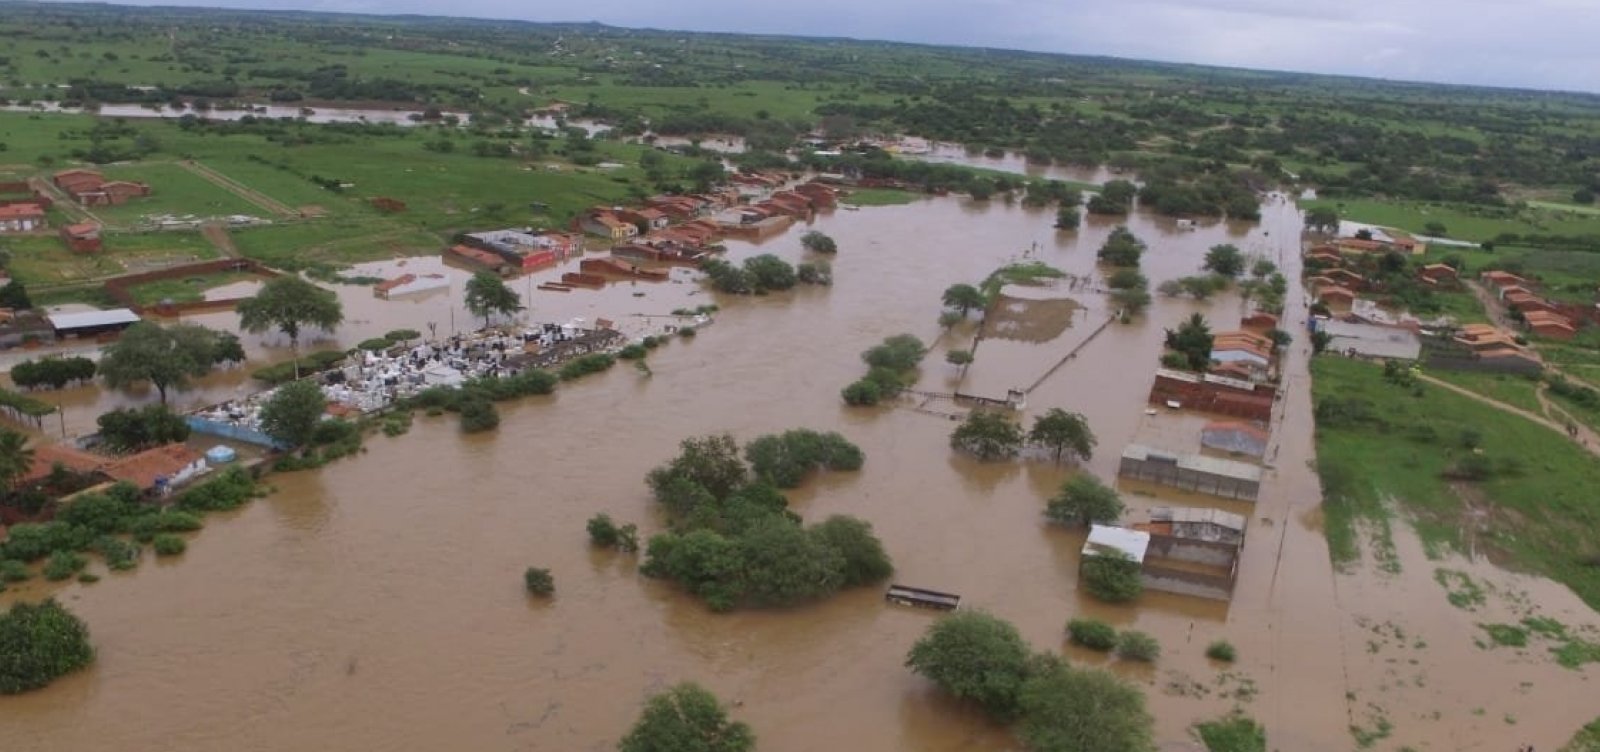 Casas próximas a rio da região atingida por rompimento de barragem serão demolidas, diz governador